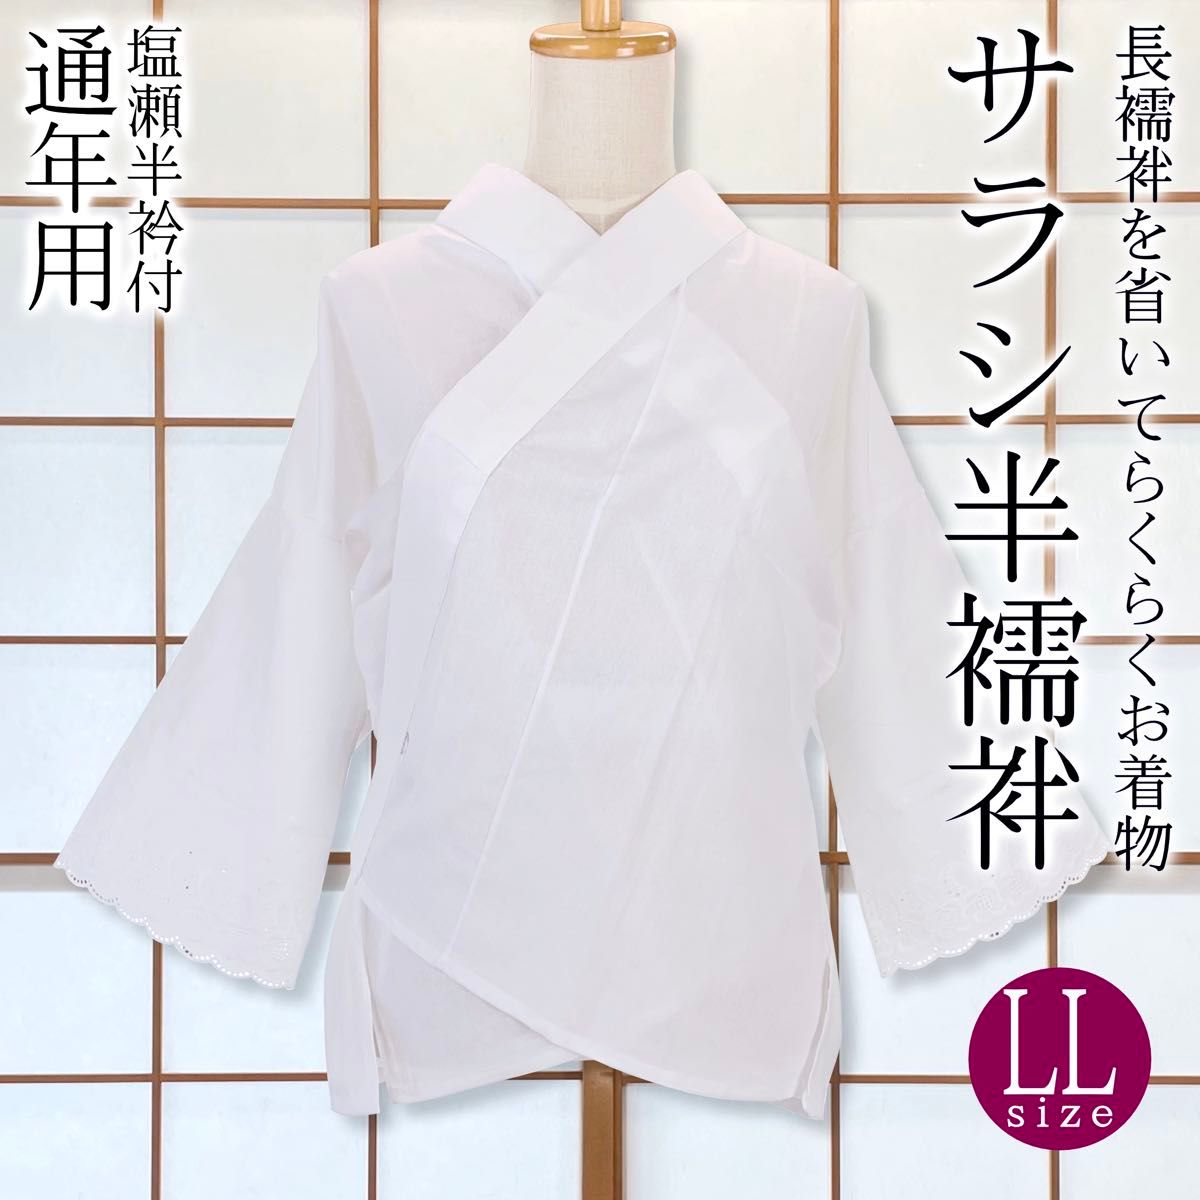 【新品】サラシ半襦袢 LL 塩瀬半衿付き うそつき襦袢 着物下着 日本製 kimonolove